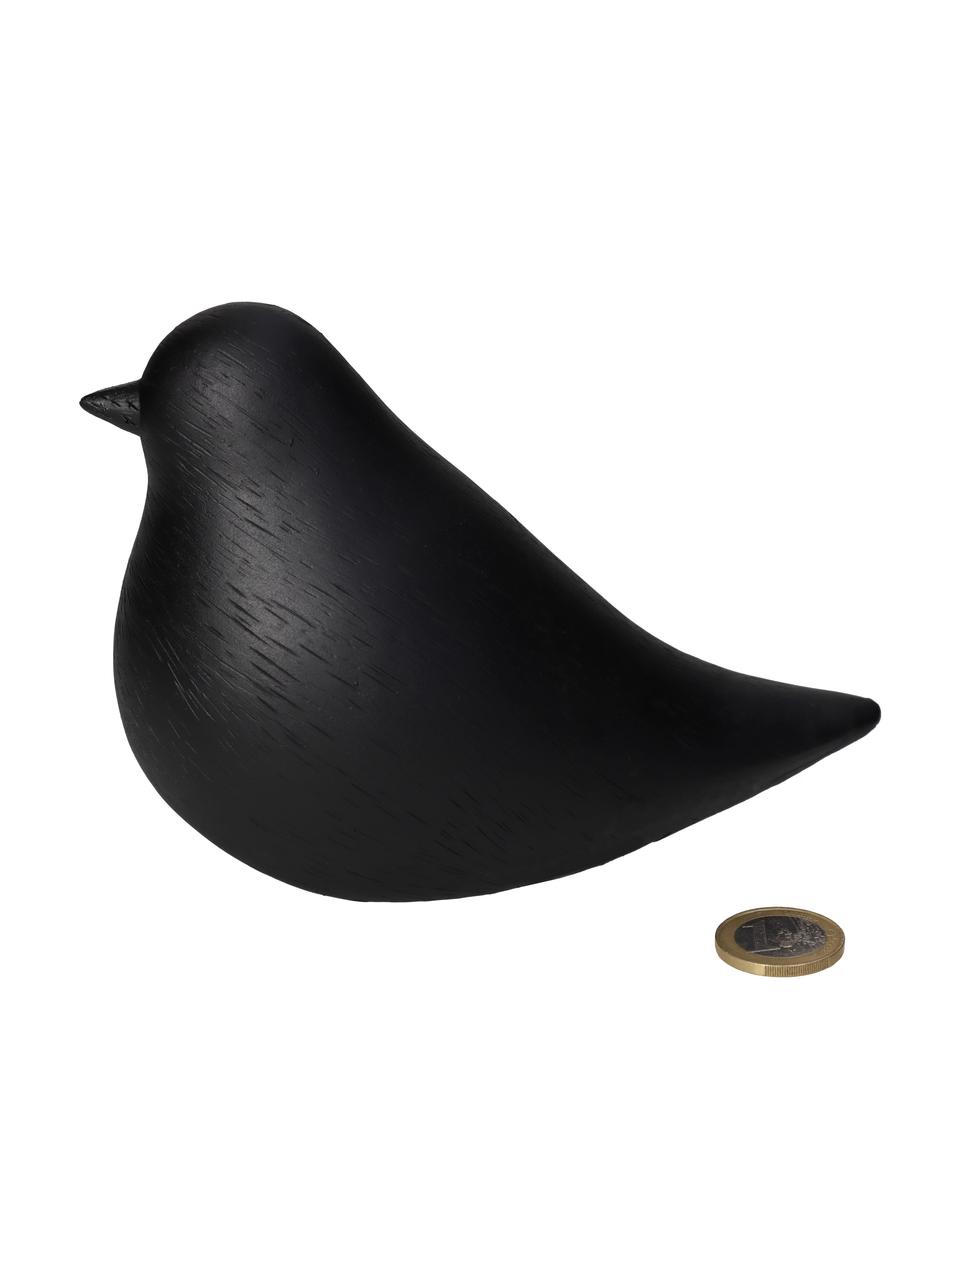 Dekorácia Vogel, Polymérová živica, Čierna, Š 8 x V 11 cm